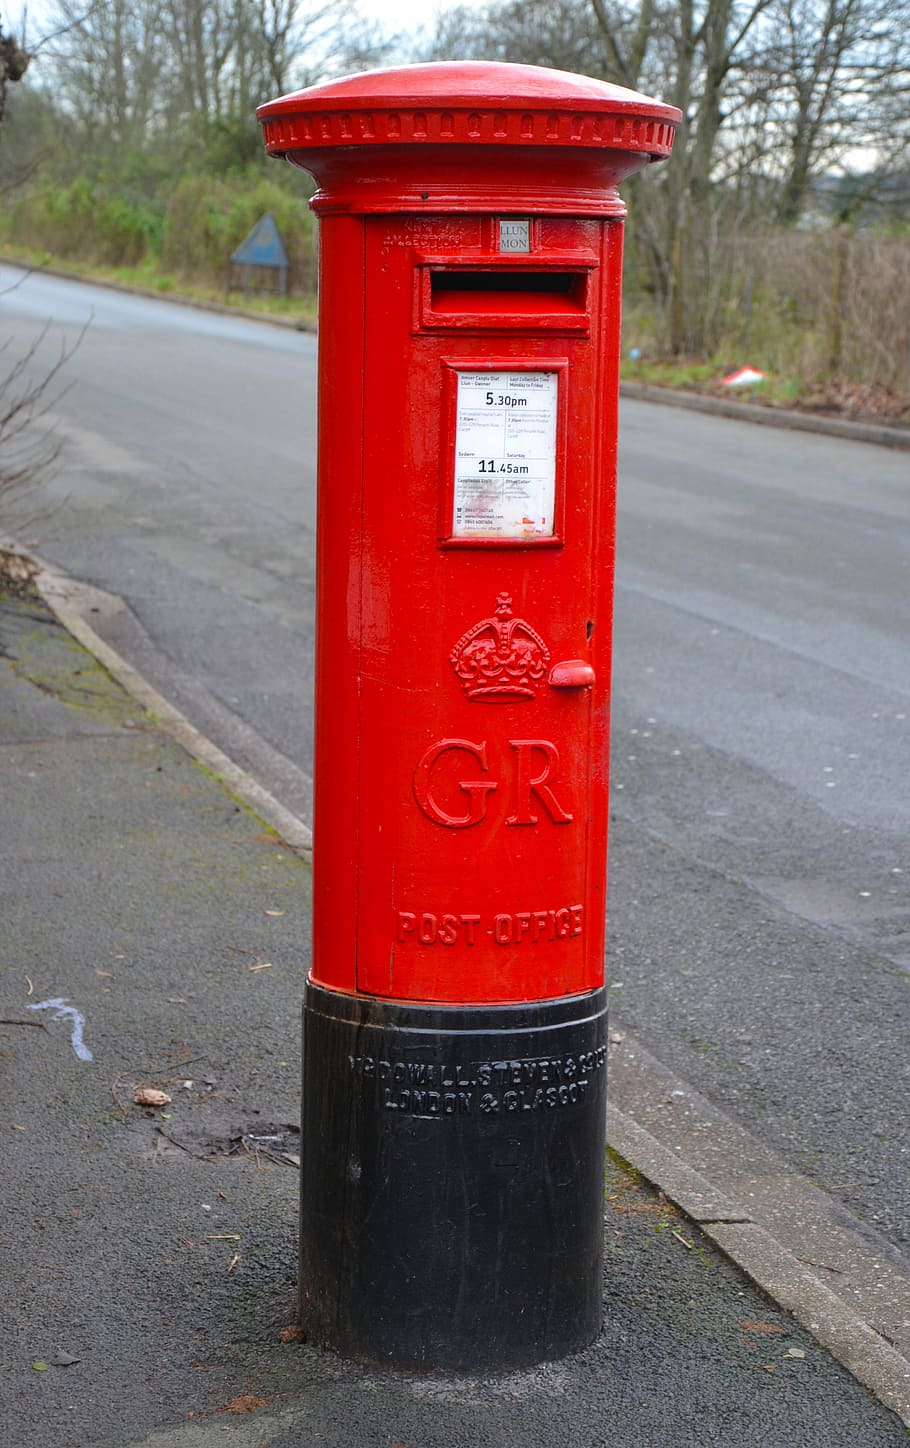 Caixa de correio, Correio, Caixa, vermelho, carta, postar, caixa postal, entrega, mensagem, enviar